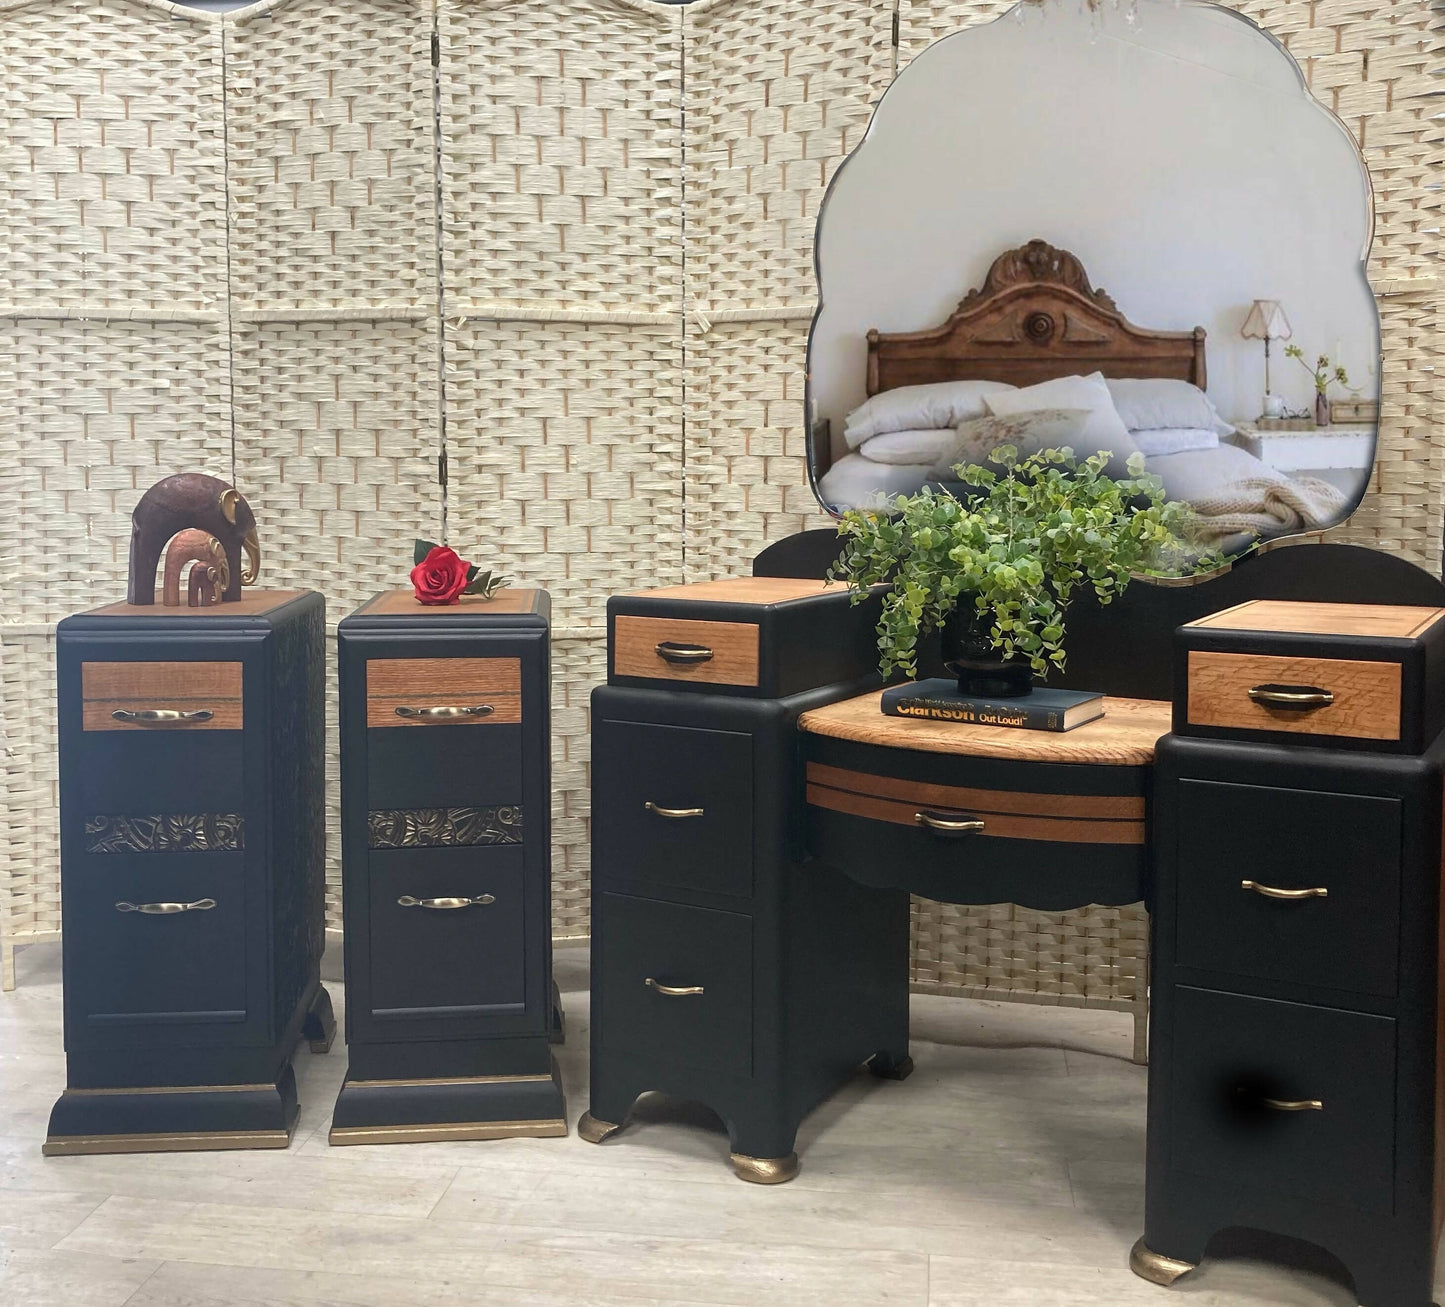 SOLD - Art Deco Vintage Bedside Tables, in Black and Bronze